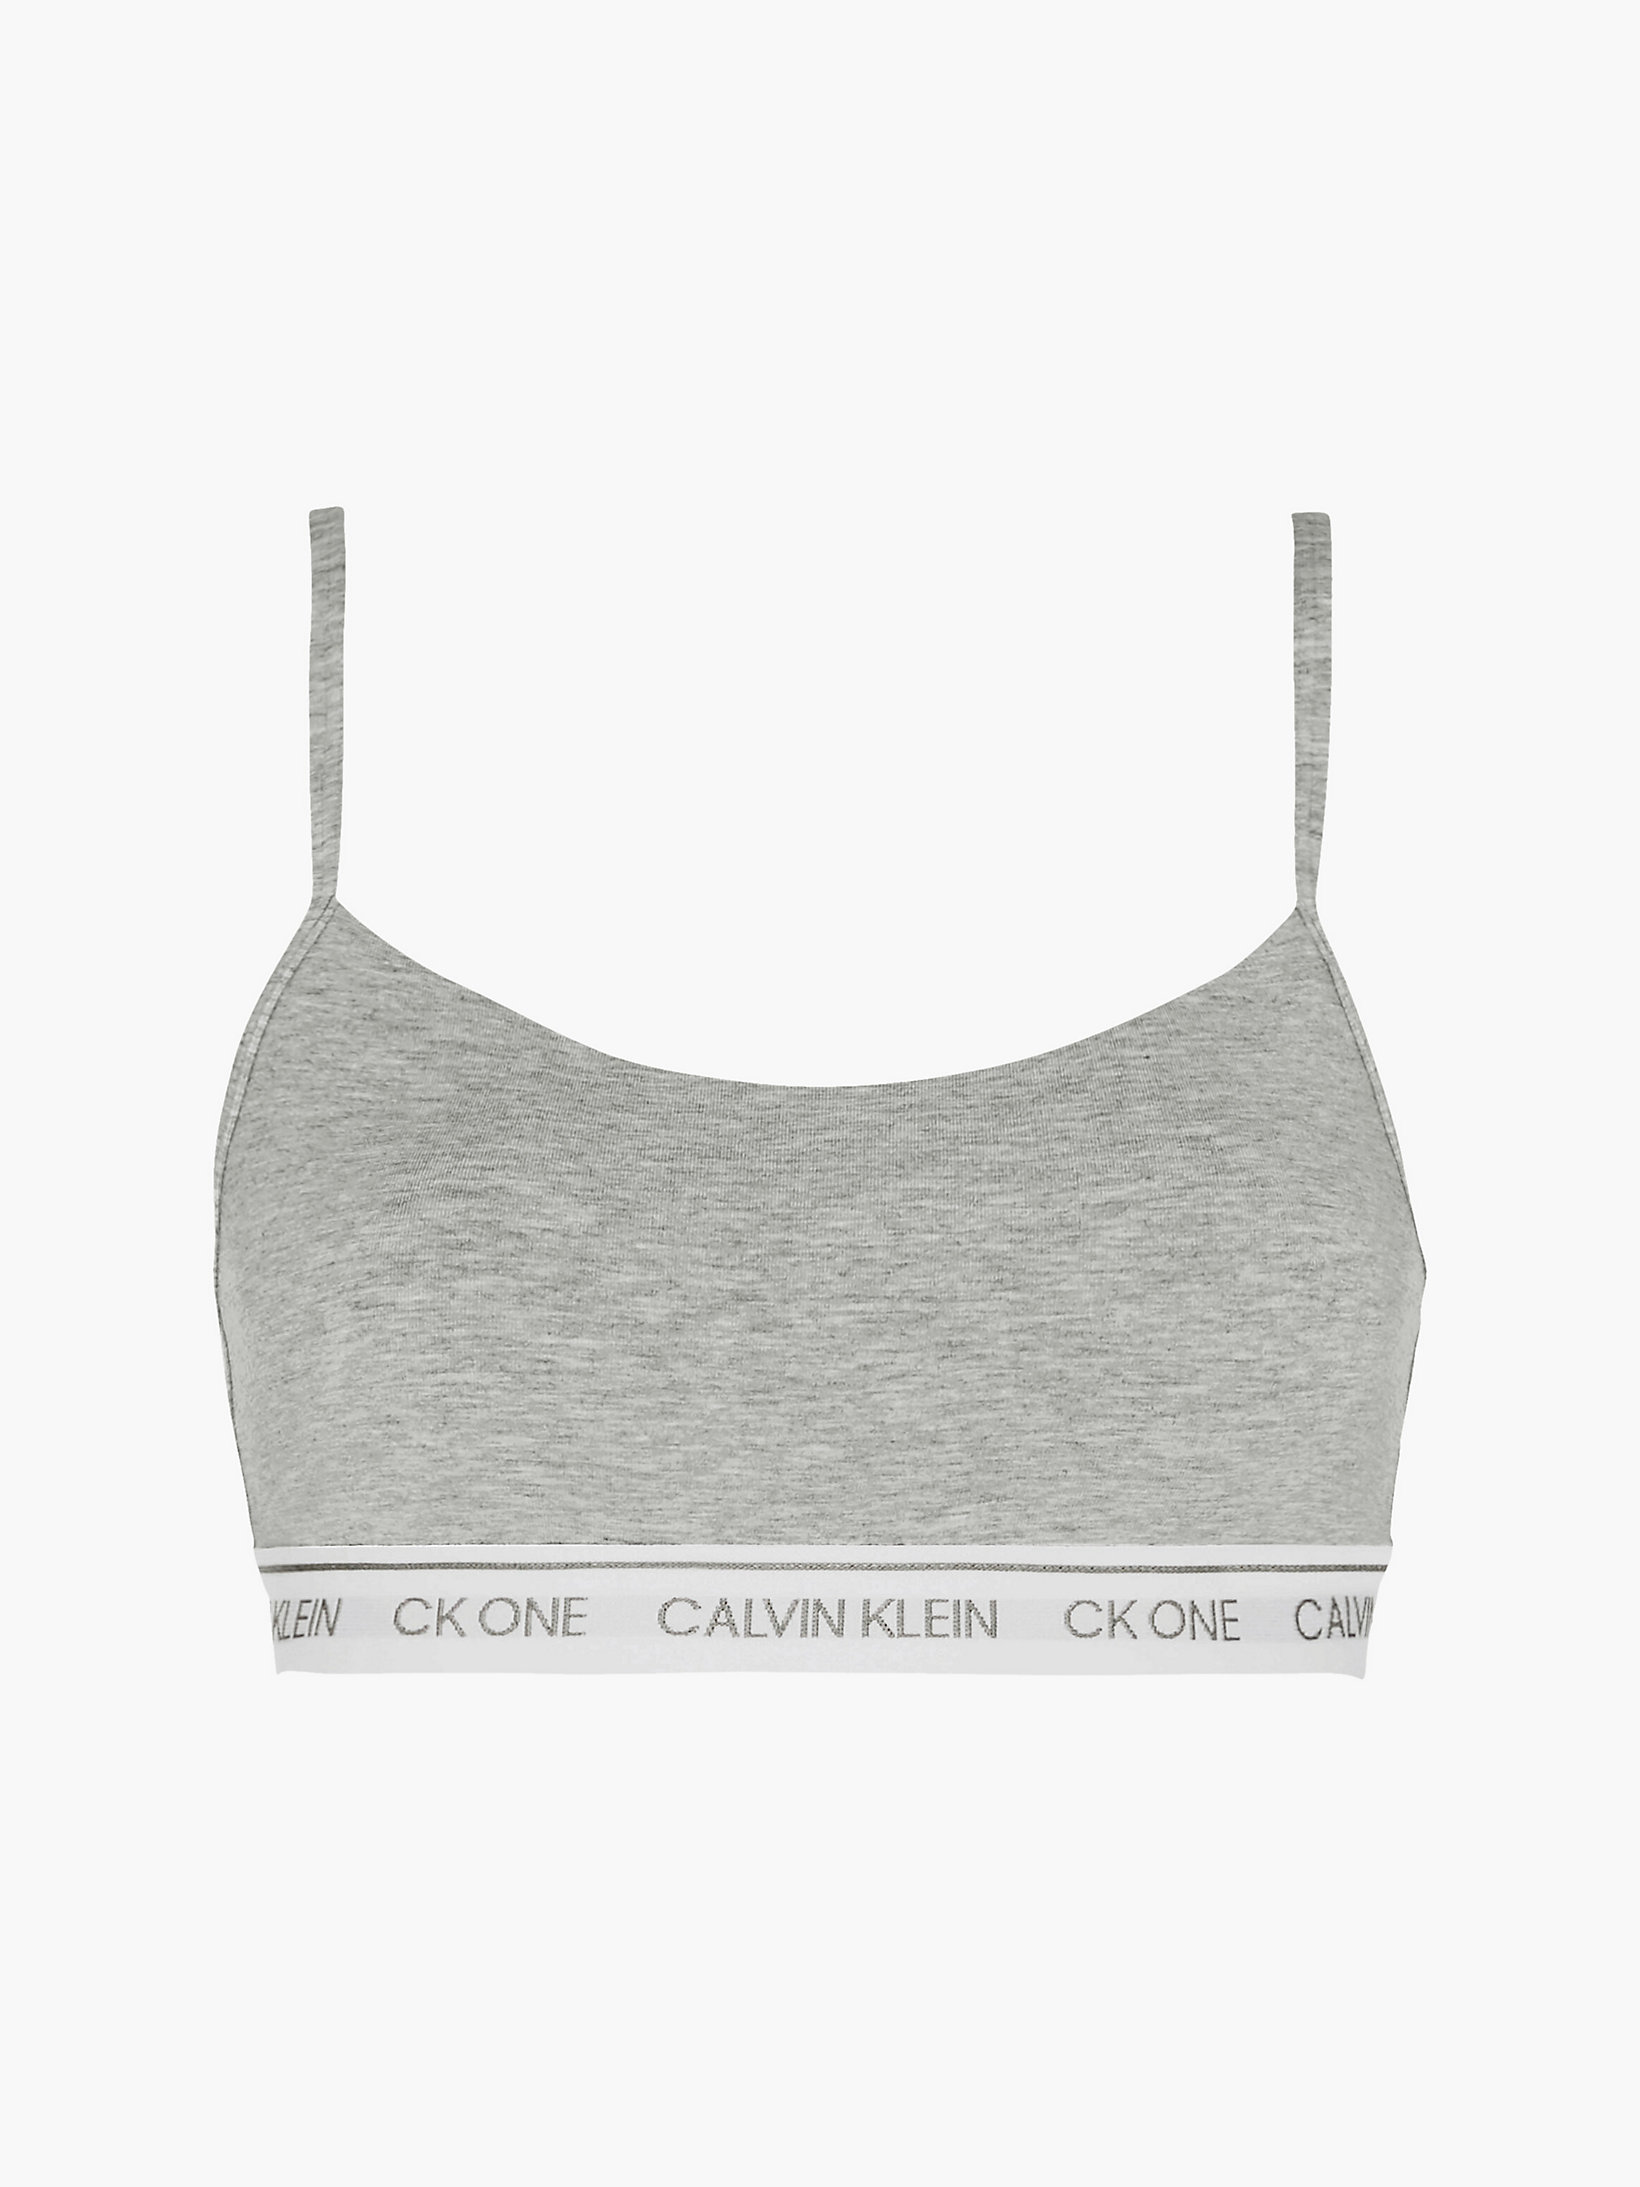 Brassière Sottile - CK One > Grey Heather > undefined donna > Calvin Klein